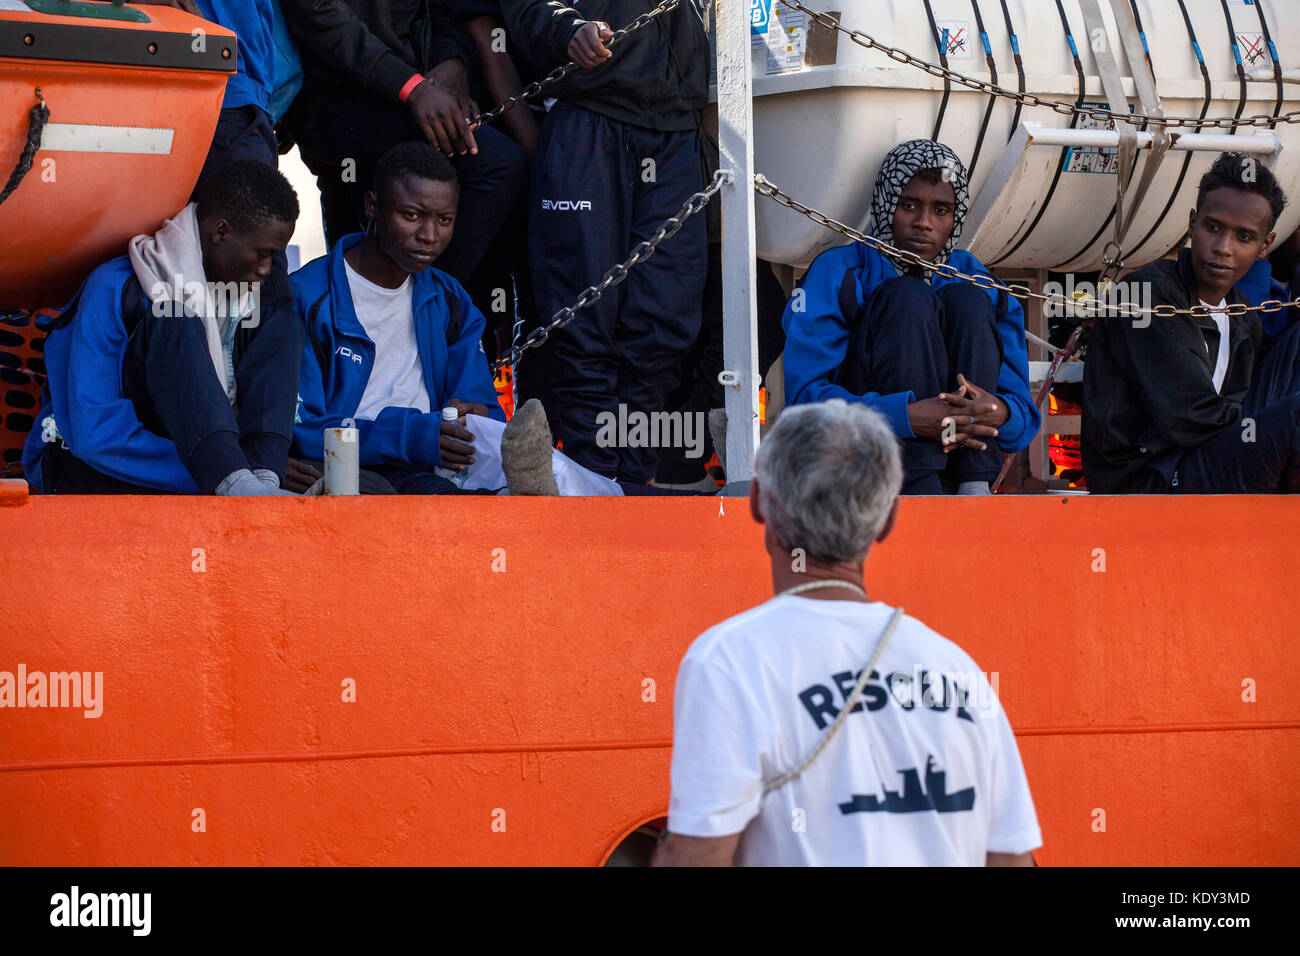 L'Aquarius (sos mediterranee) nave arrivato al porto di palermo, Italia il 13 ottobre 2017 portante 606 migranti. Foto Stock